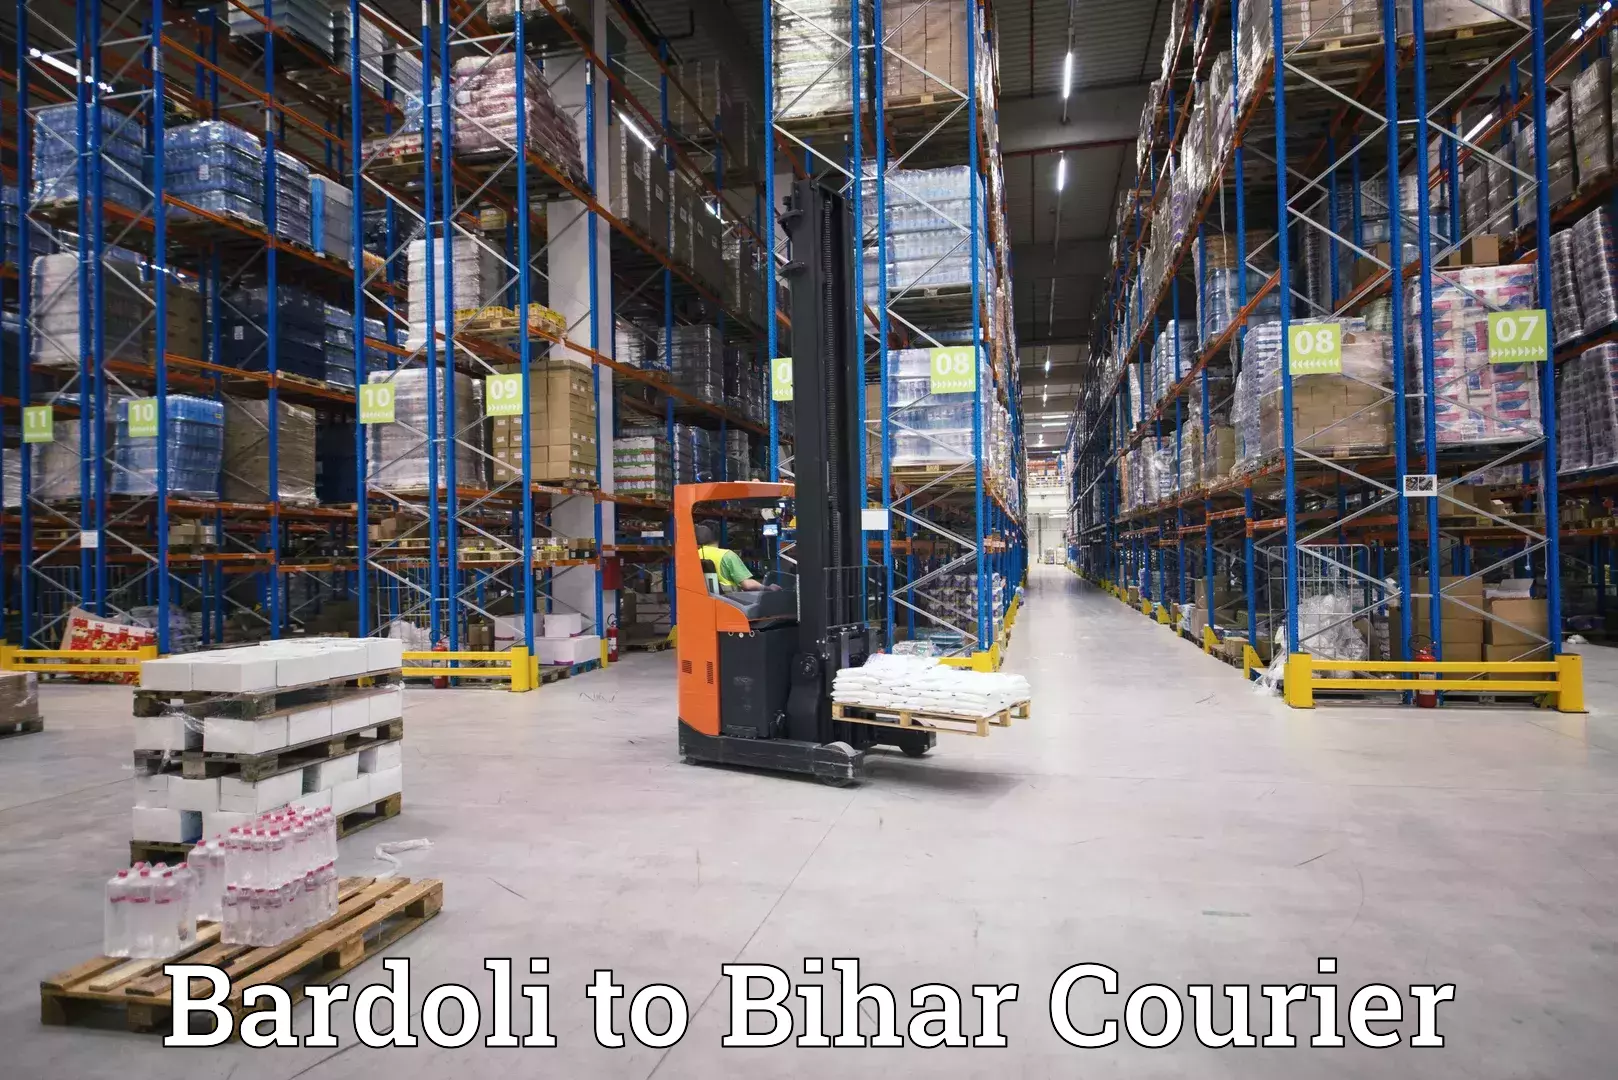 Courier service efficiency Bardoli to Bhorey